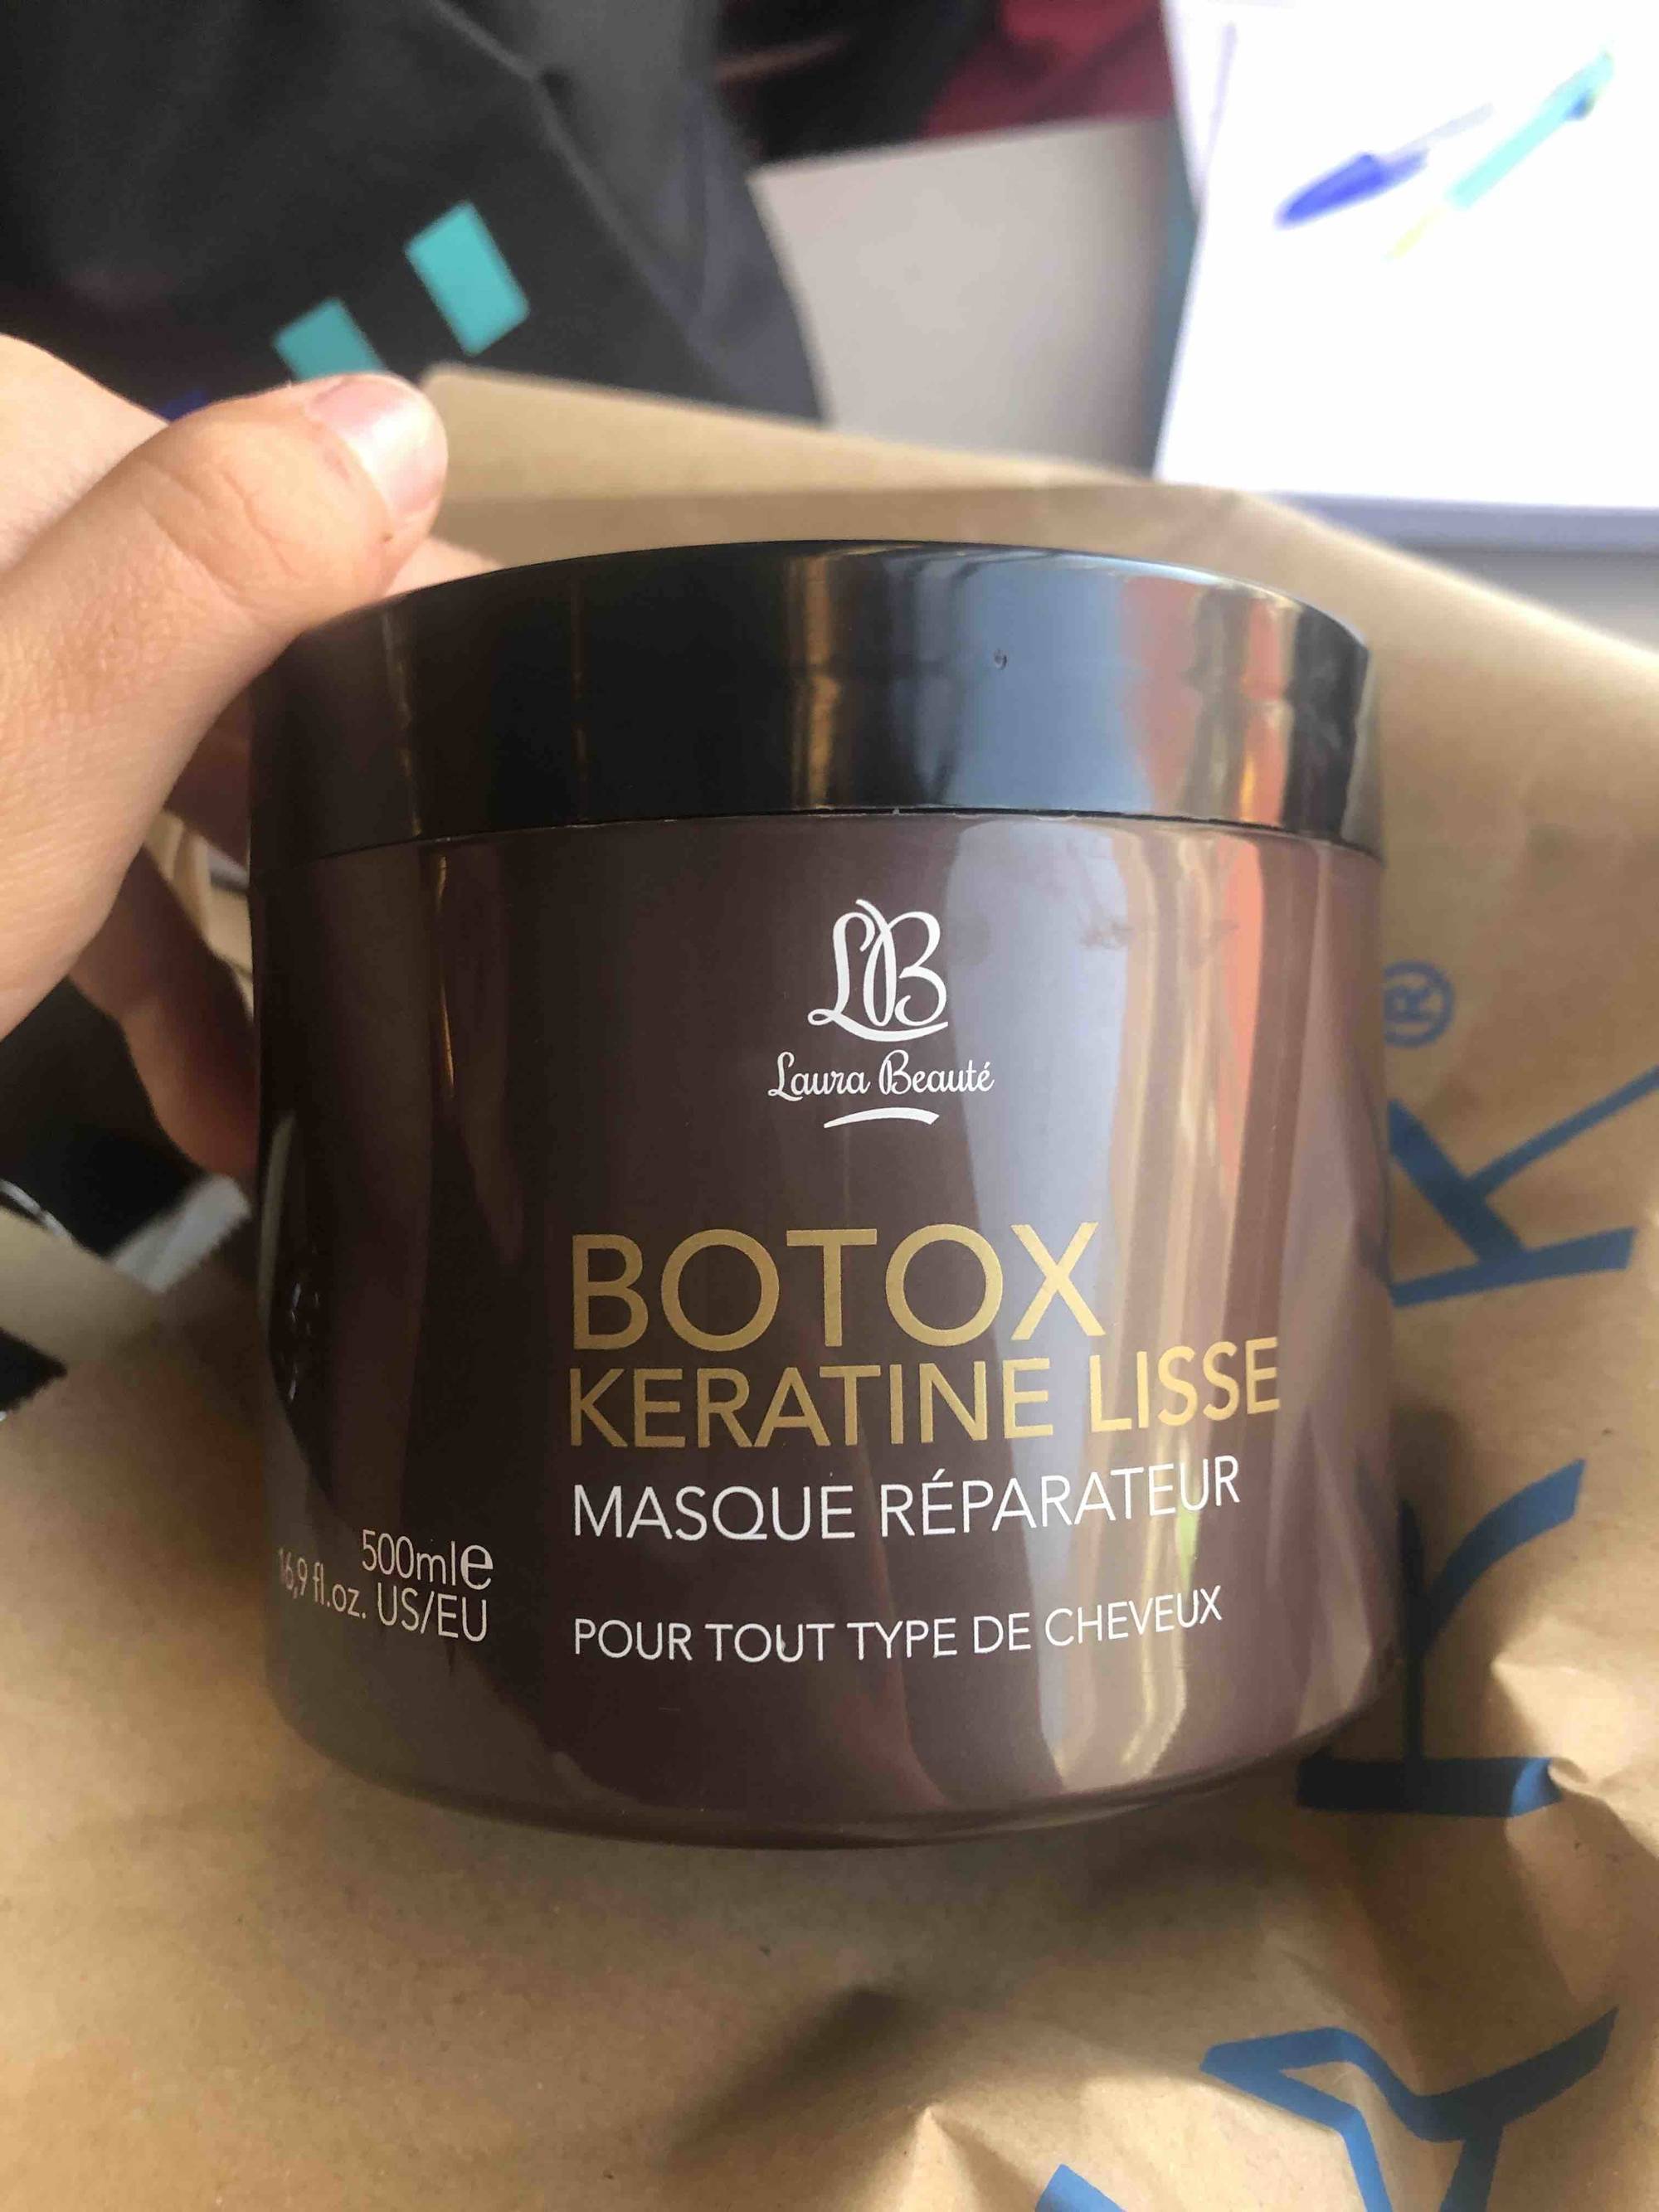 LAURA BEAUTÉ - Botox Kératine lisse - Masque réparateur